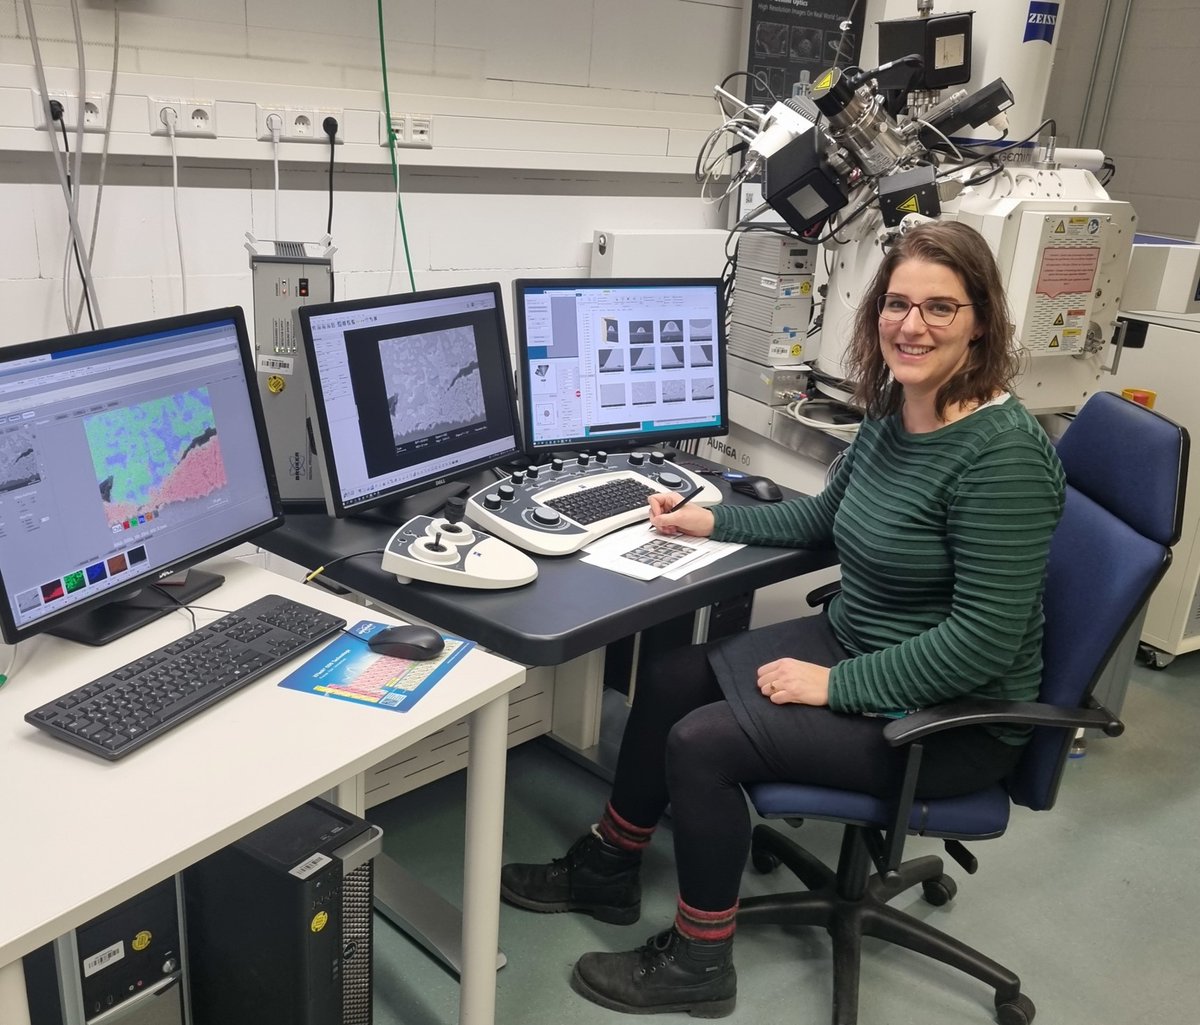 Angela De Rose #PhysikerinderWoche - Angela works as a scientist at @FraunhoferISE in Freiburg... @BMBF_Bund #womeninscience #womeninphysics #physikerin 👩‍💻👉 dpg-physik.de/vereinigungen/…